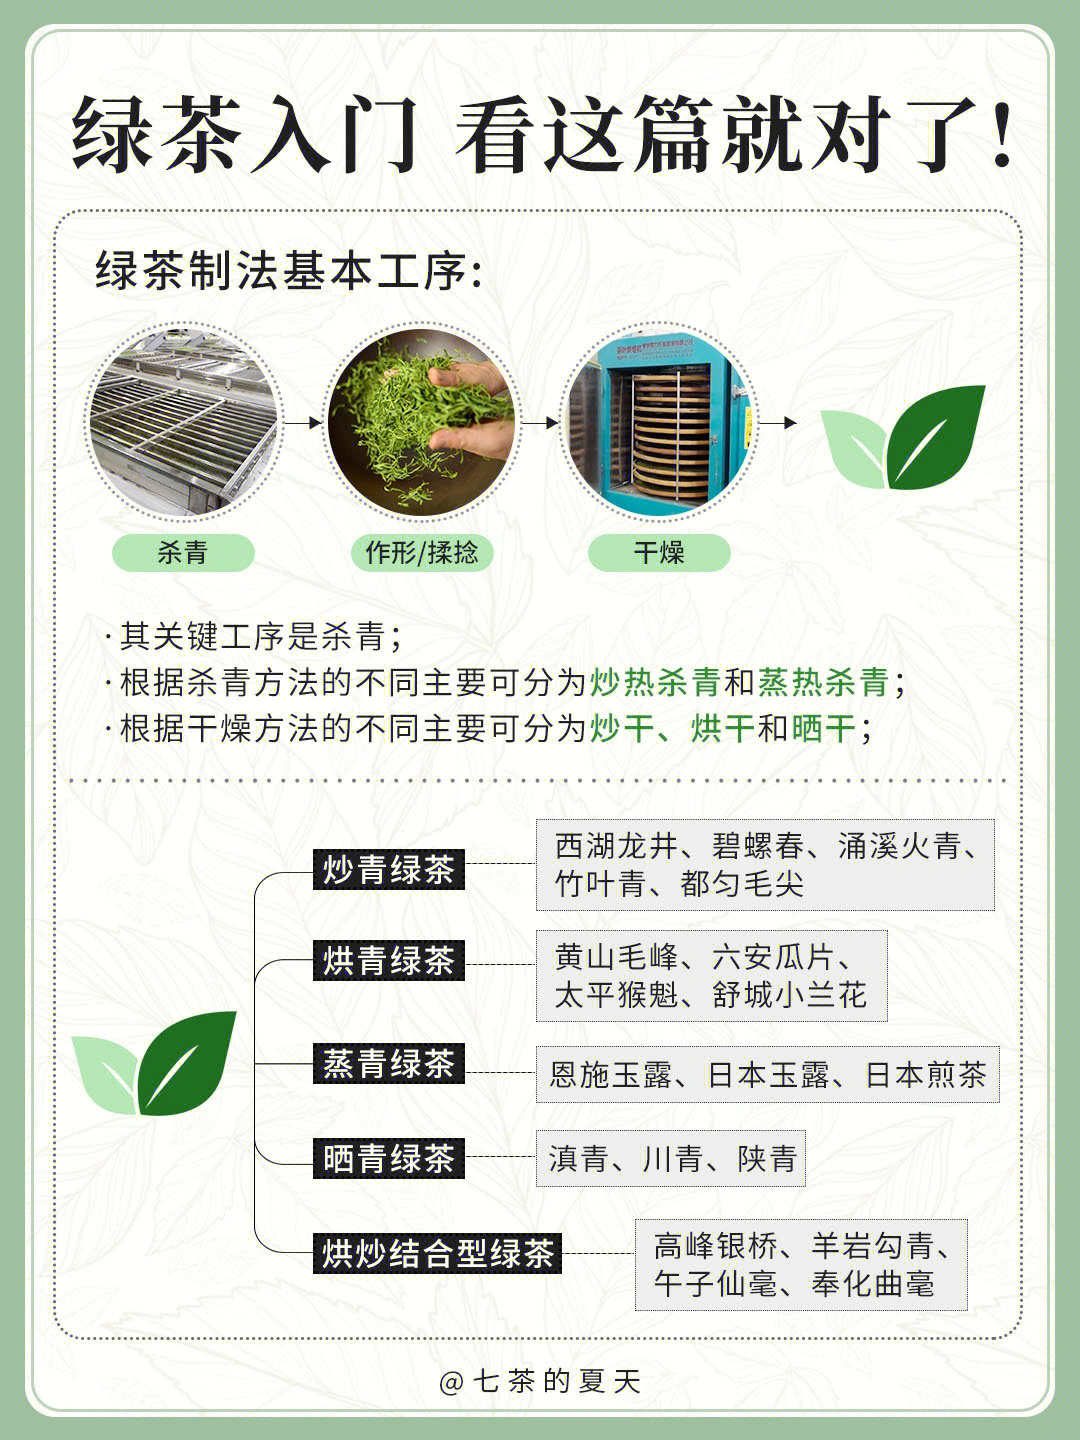 绿茶种类繁多,因制作工艺的不同分为几个大类,品质各有其特色,大家